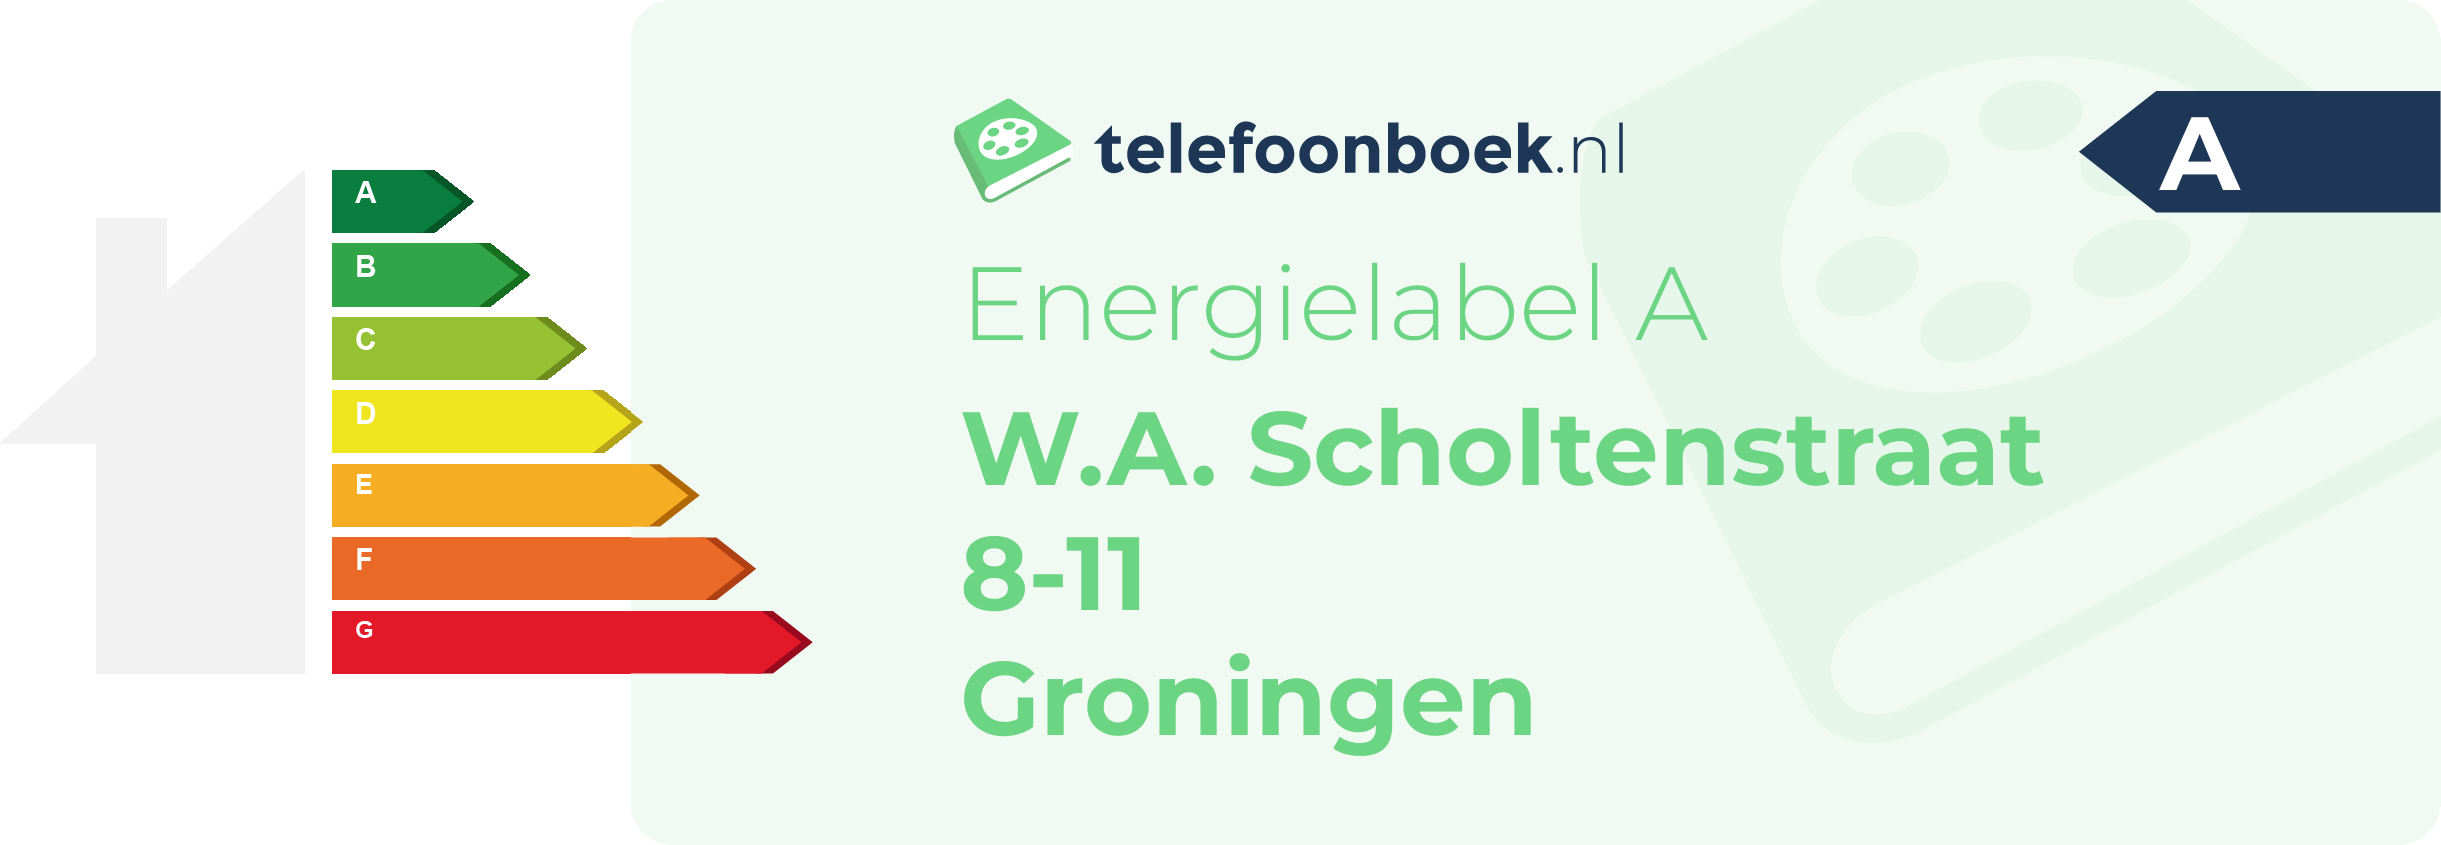 Energielabel W.A. Scholtenstraat 8-11 Groningen